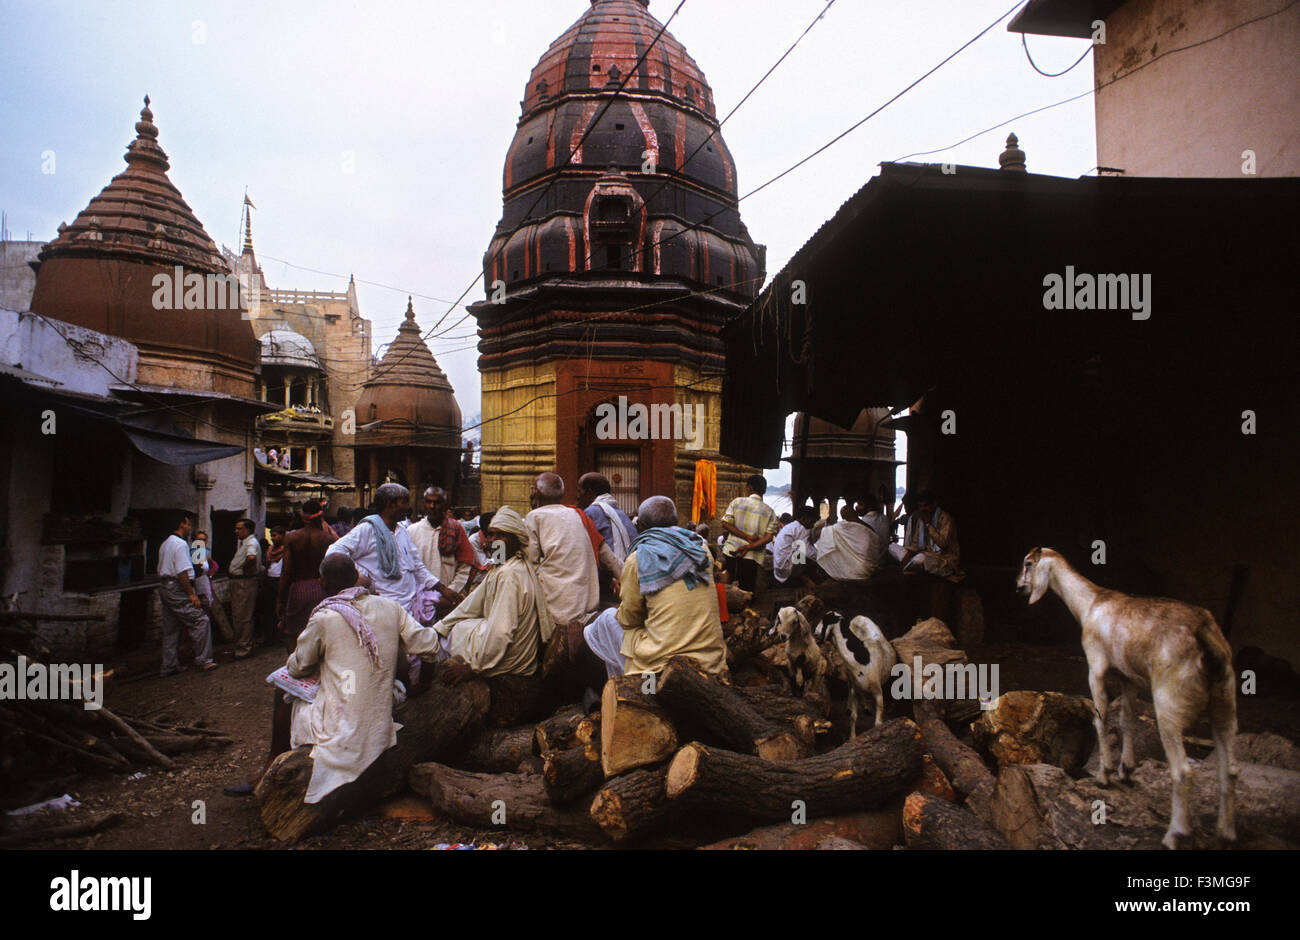 Asie Inde Uttar Pradesh Varanasi Manikarnika Ghat utilisé pour les cérémonies de crémation hindou. Varanasi, Uttar Pradesh, Inde. Manikarn Banque D'Images